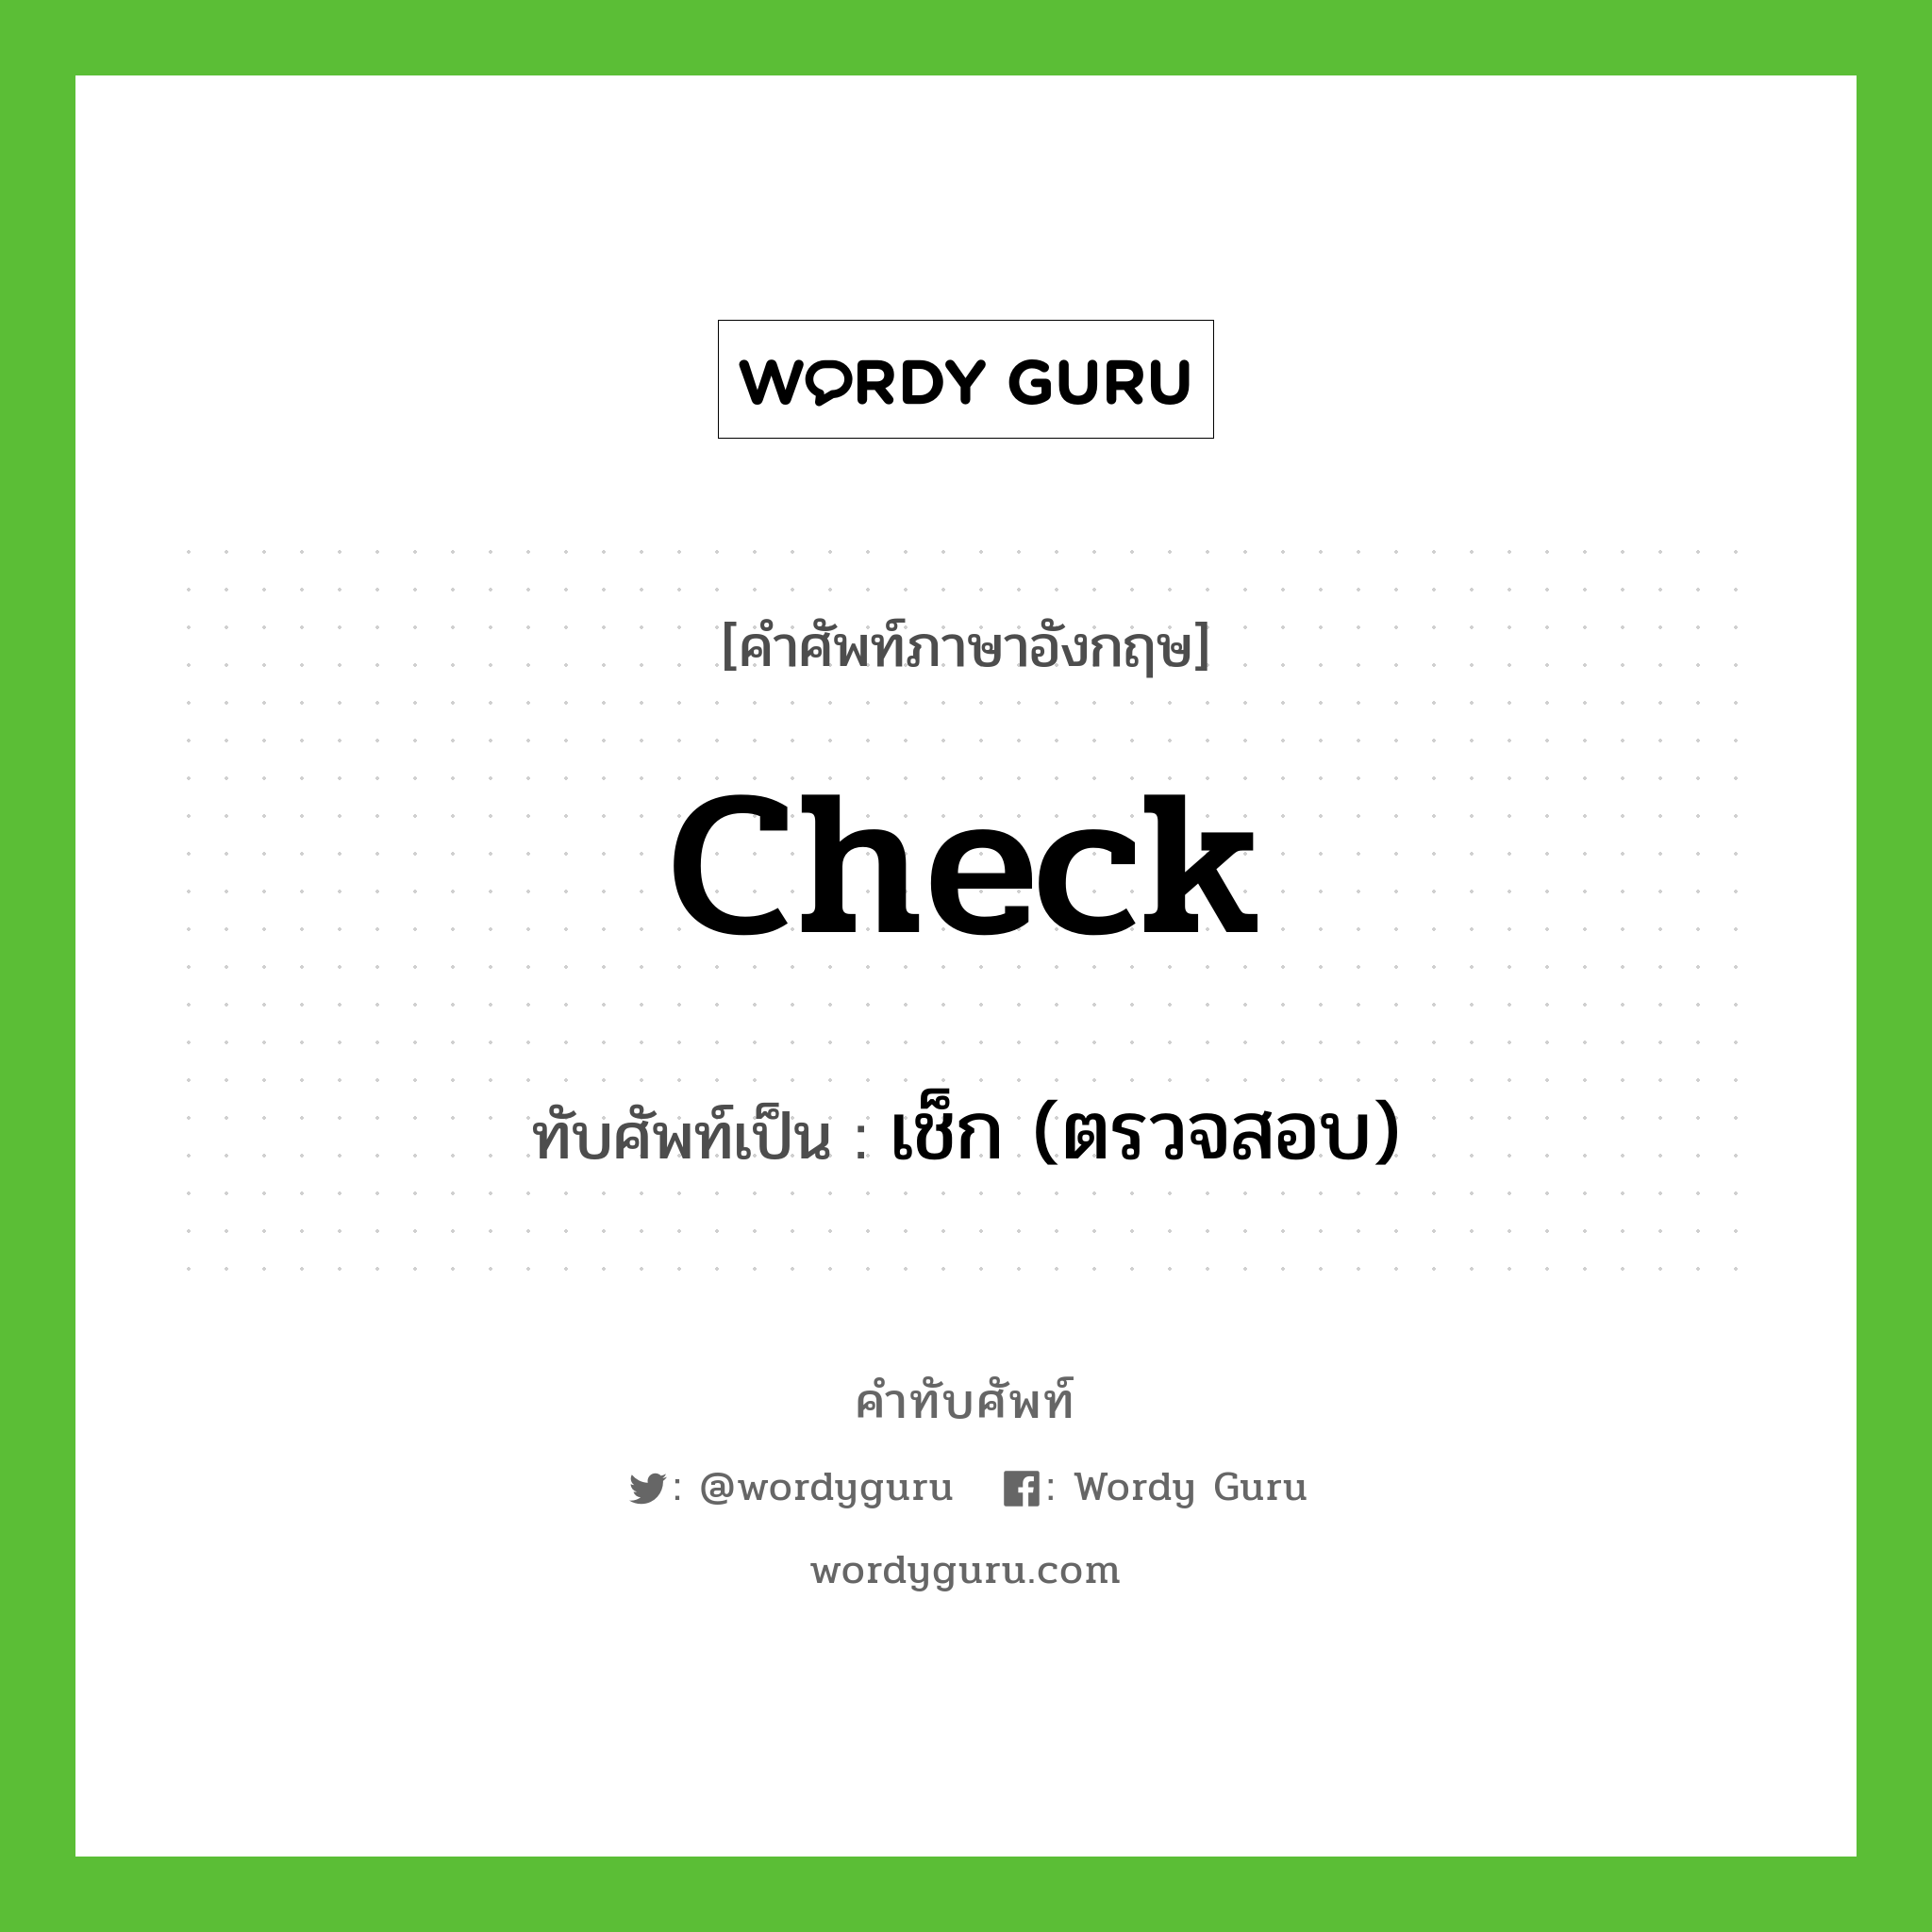 check เขียนเป็นคำไทยว่าอะไร?, คำศัพท์ภาษาอังกฤษ check ทับศัพท์เป็น เช็ก (ตรวจสอบ)